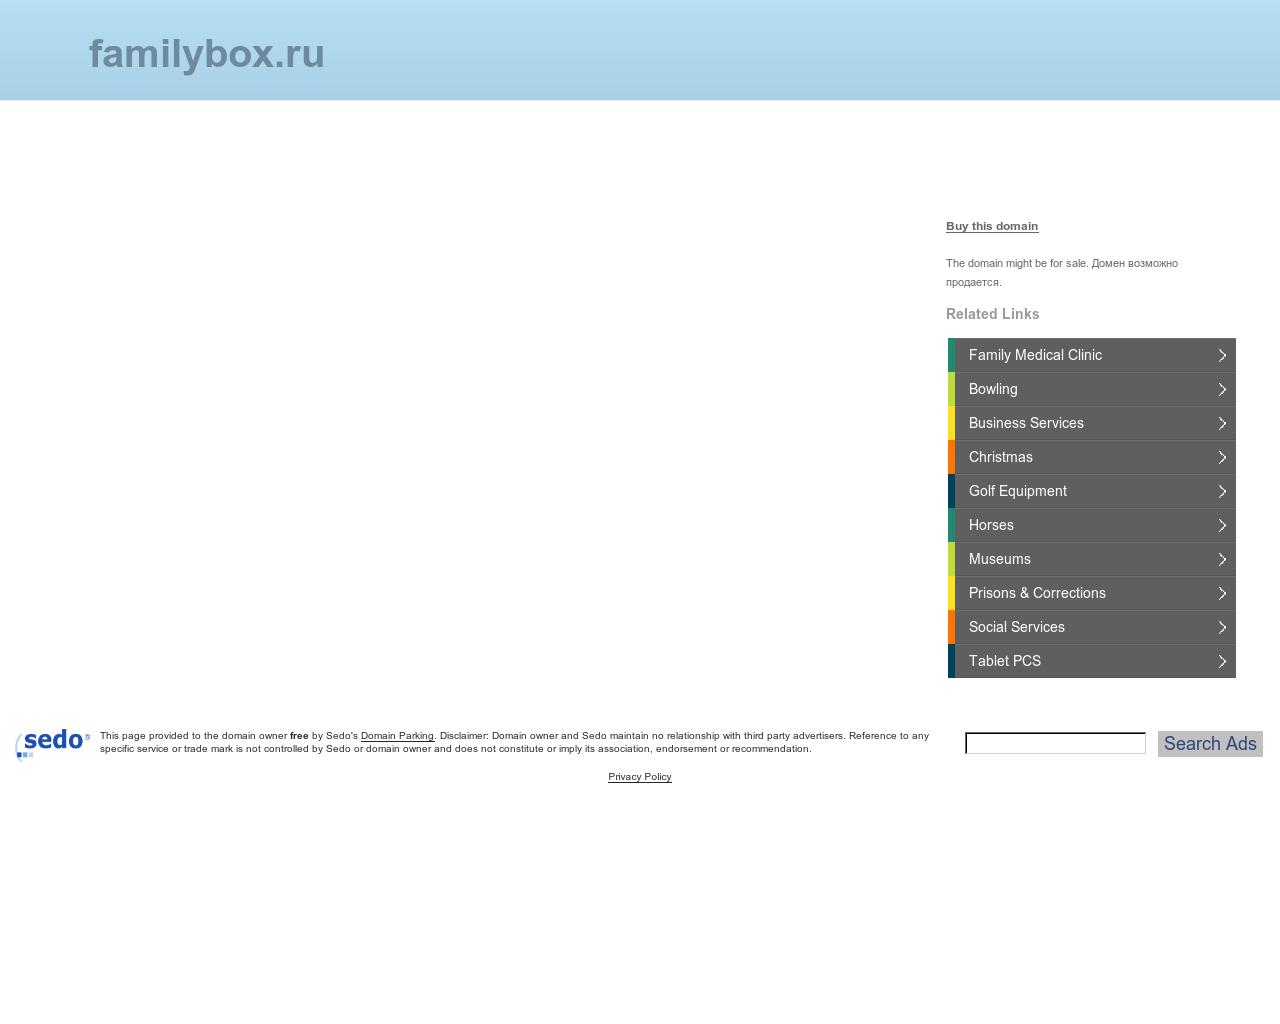 Изображение сайта familybox.ru в разрешении 1280x1024